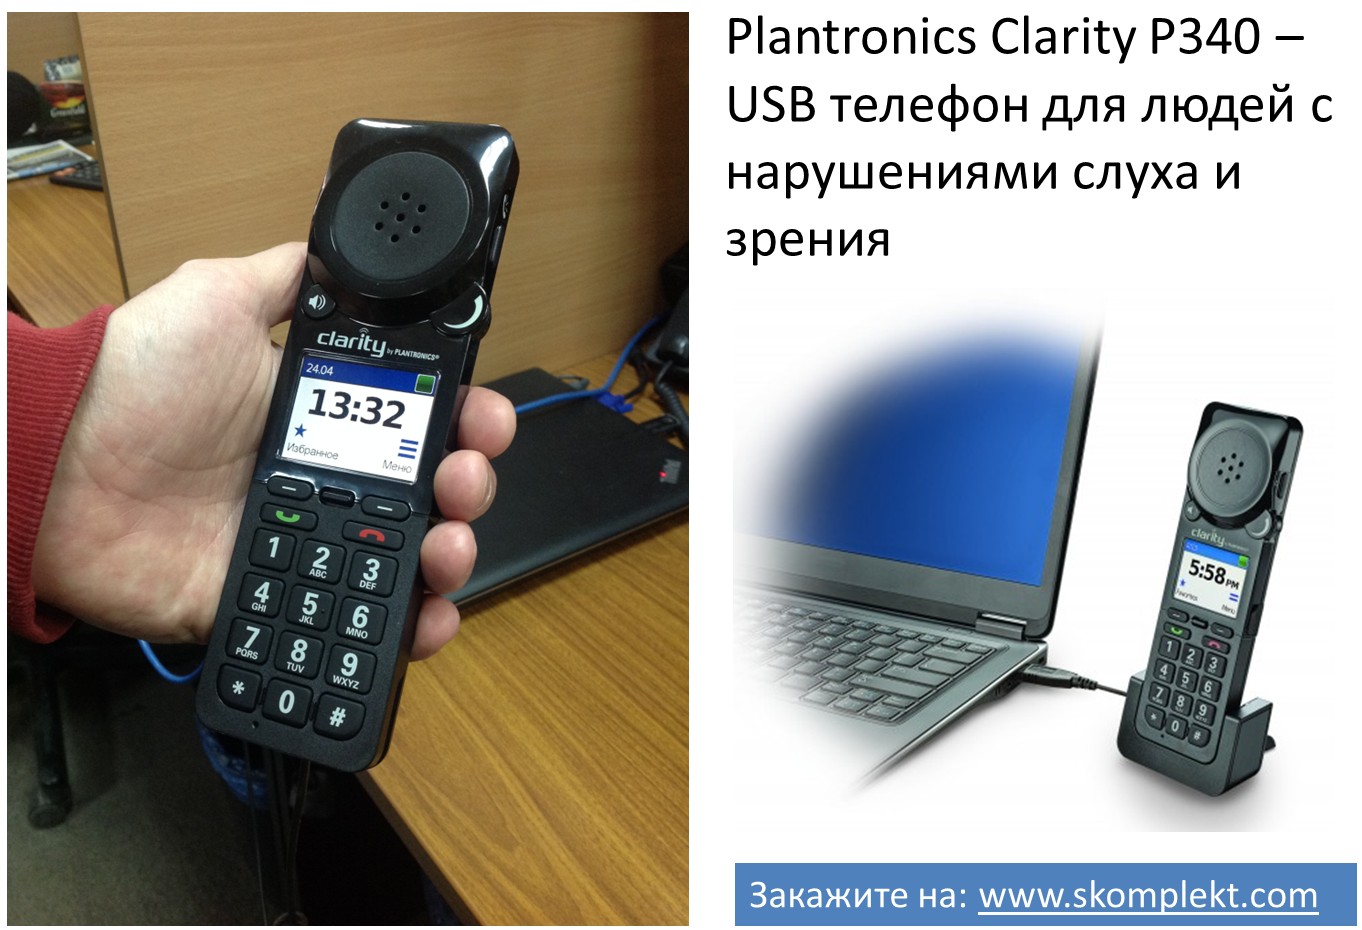 Plantronics Clarity P340 – USB телефон для людей с нарушениями слуха и зрения